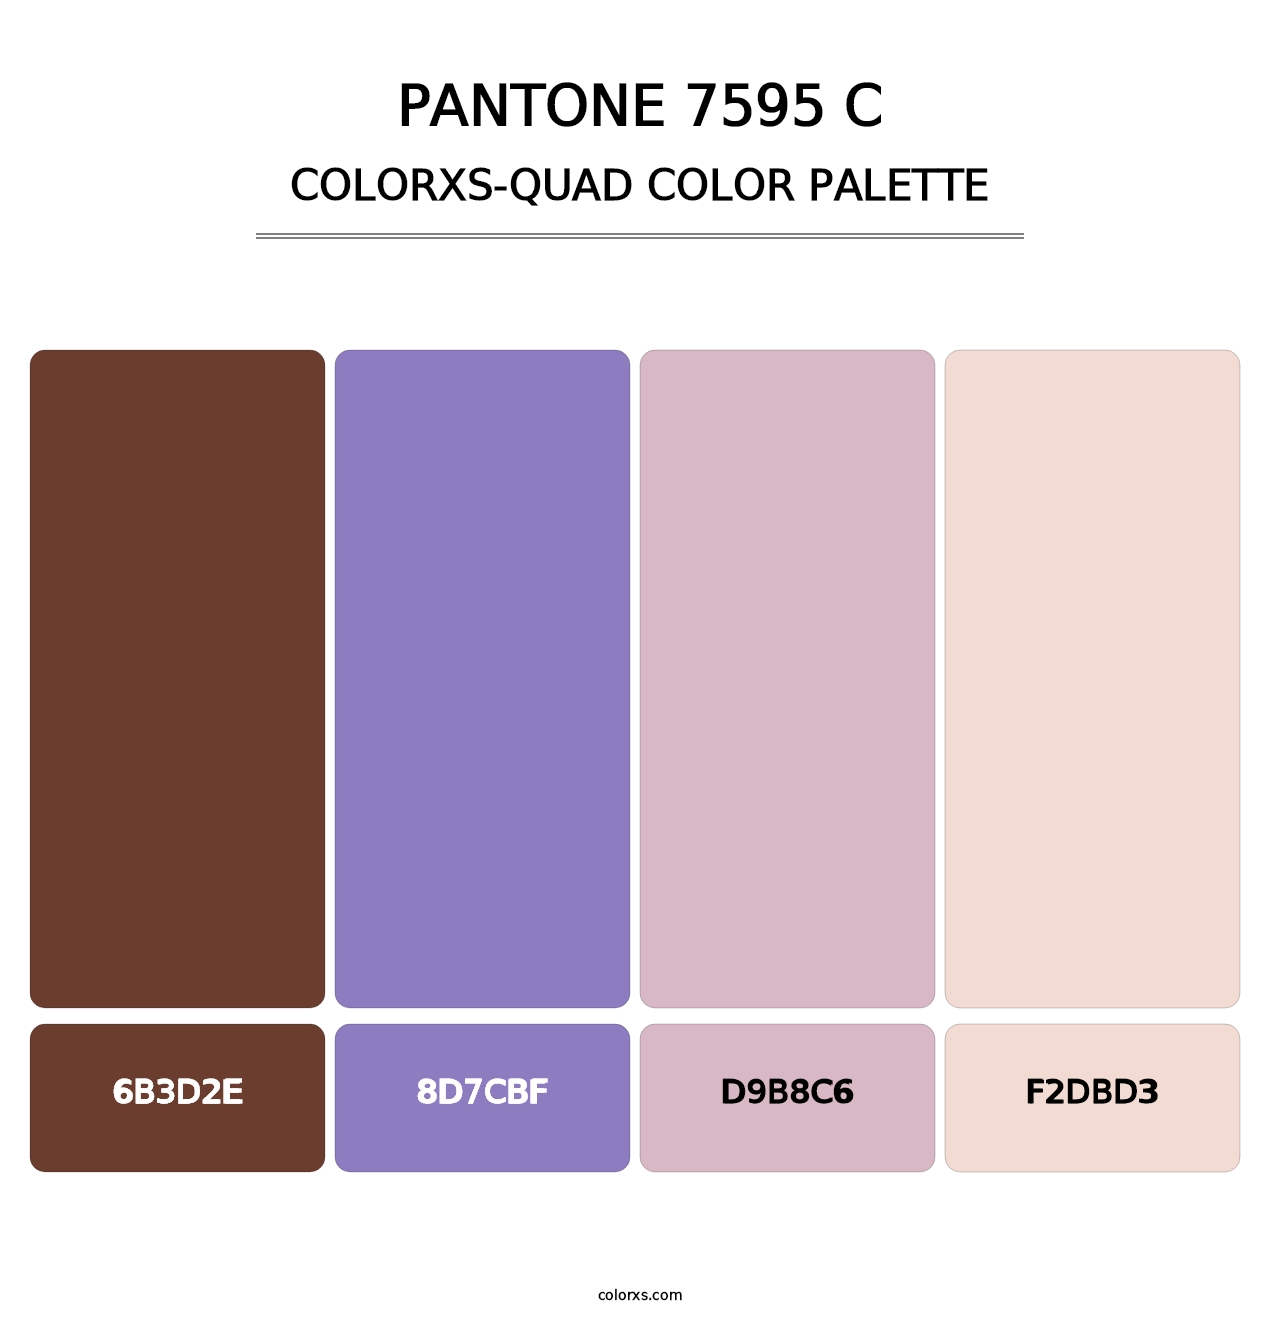 PANTONE 7595 C - Colorxs Quad Palette